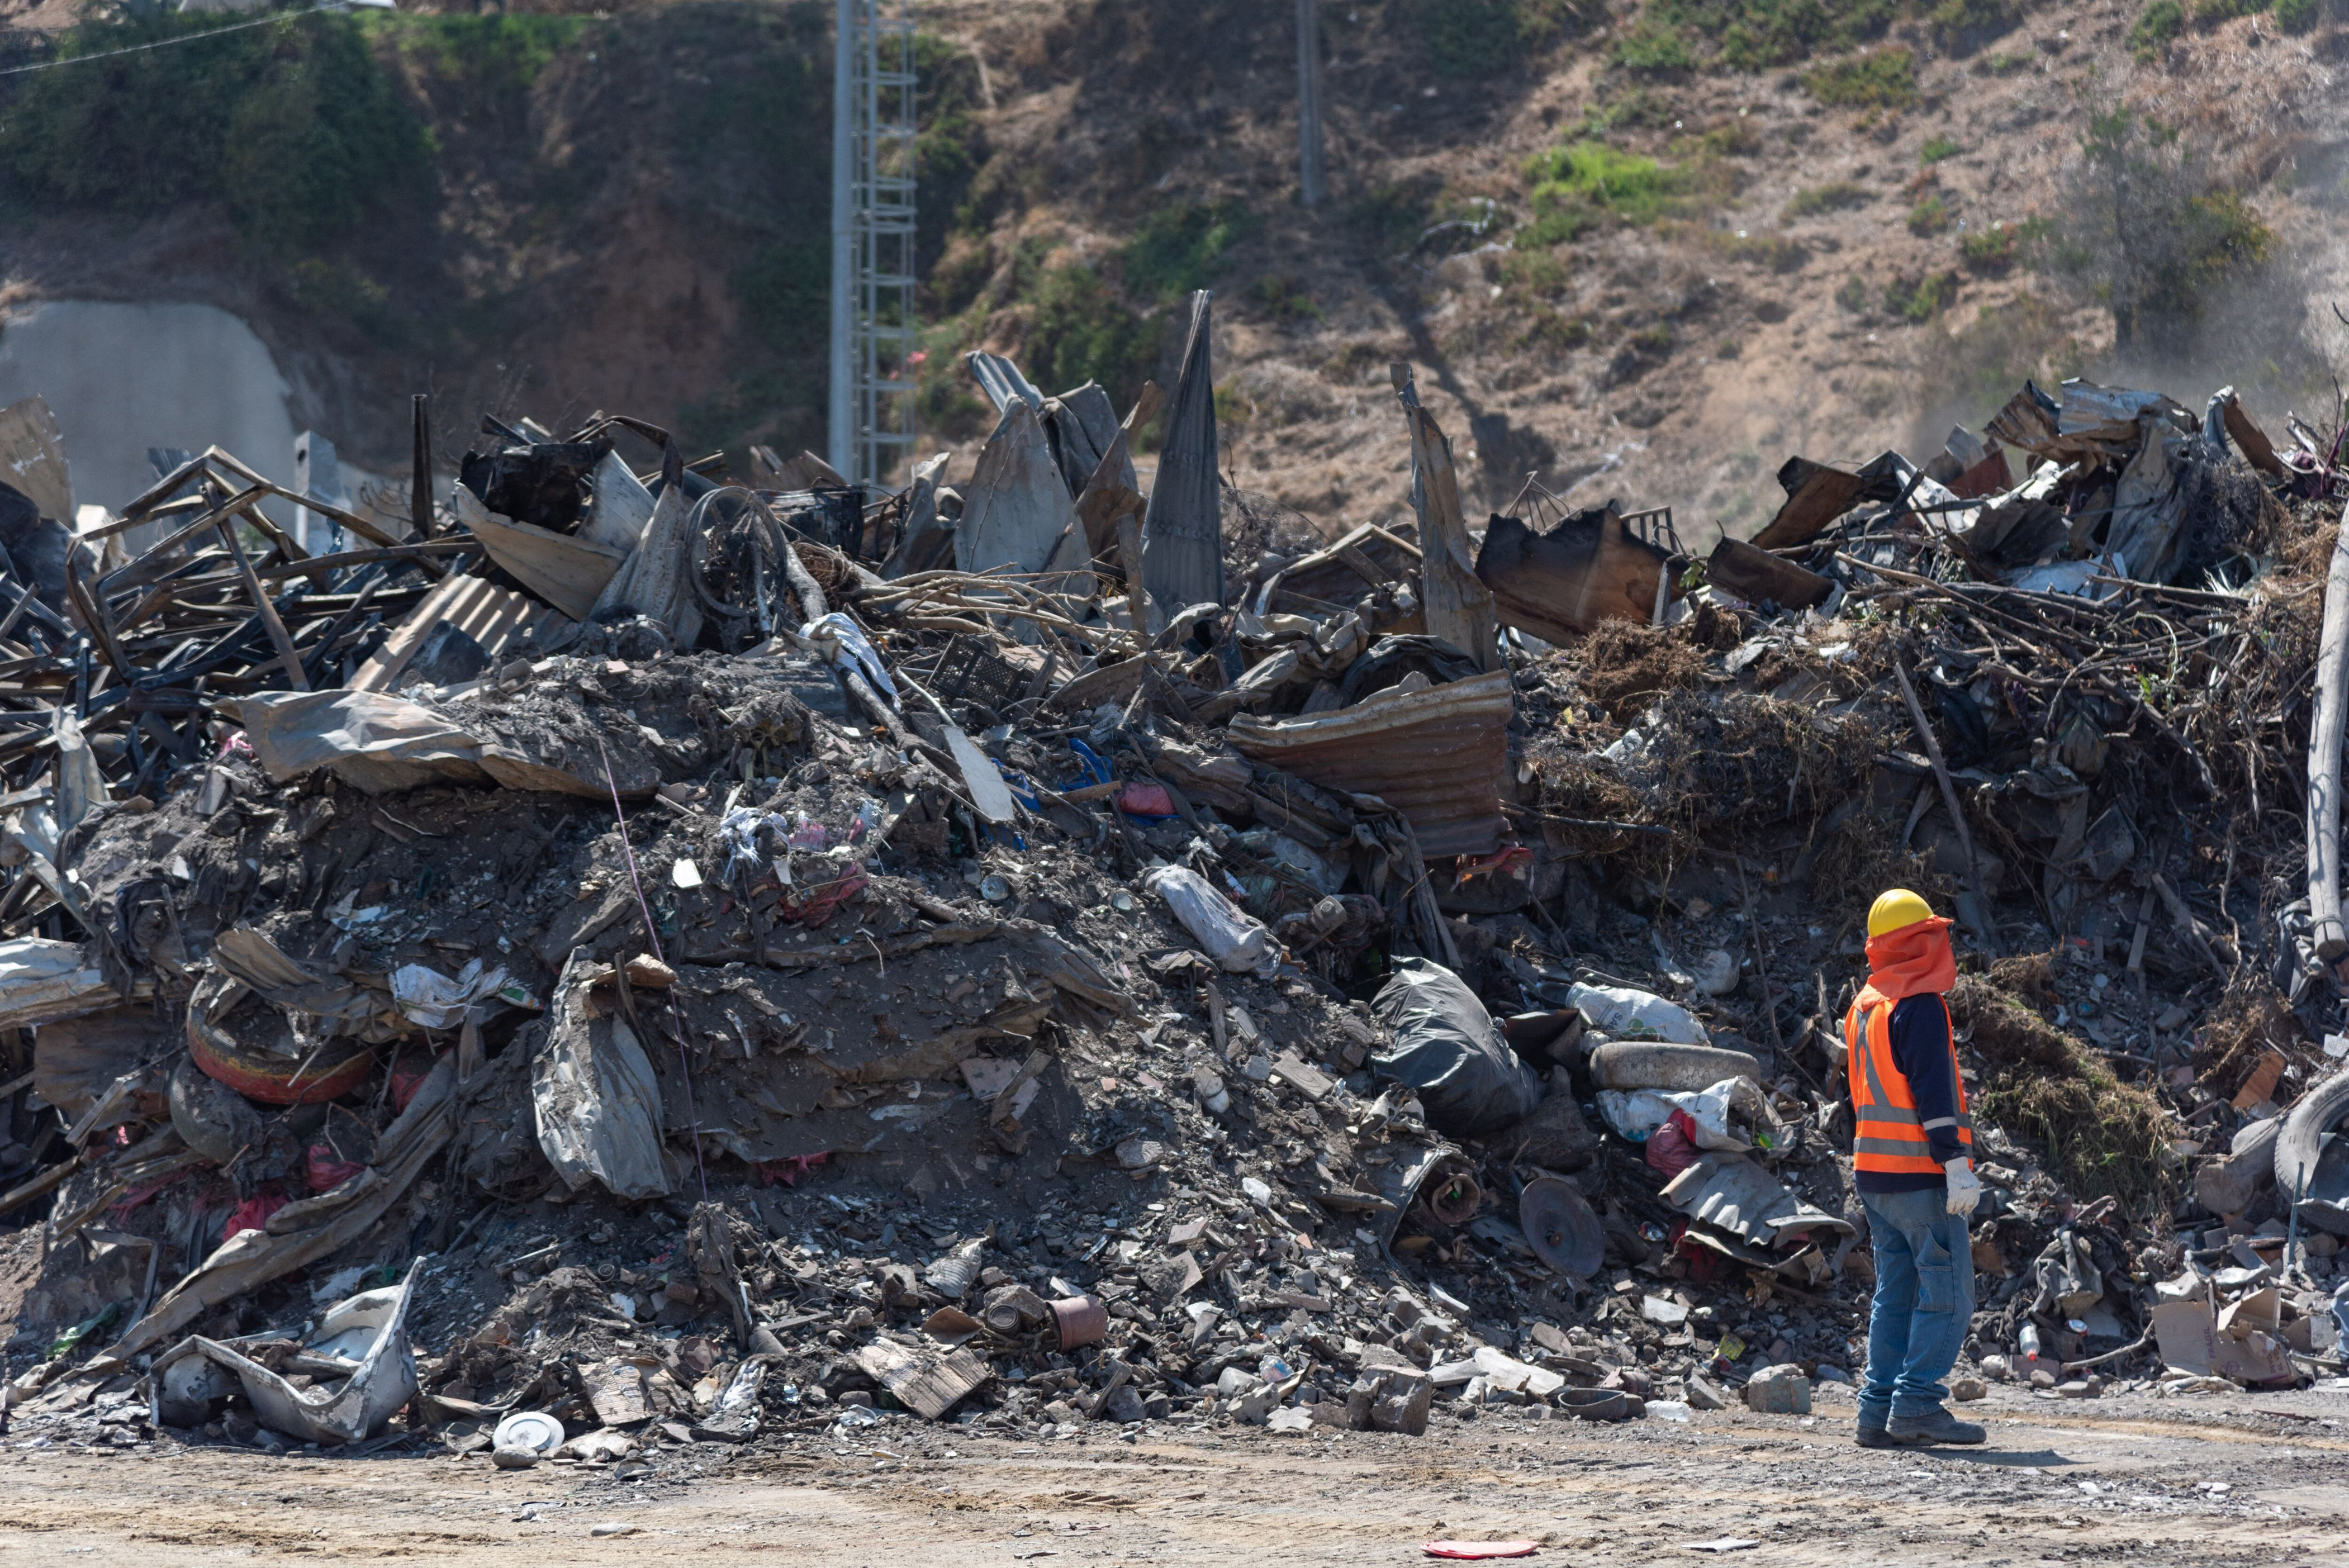 mario marcel espera un “esfuerzo mayor” de los privados de cara a la reconstrucción tras los incendios en la región de valparaíso